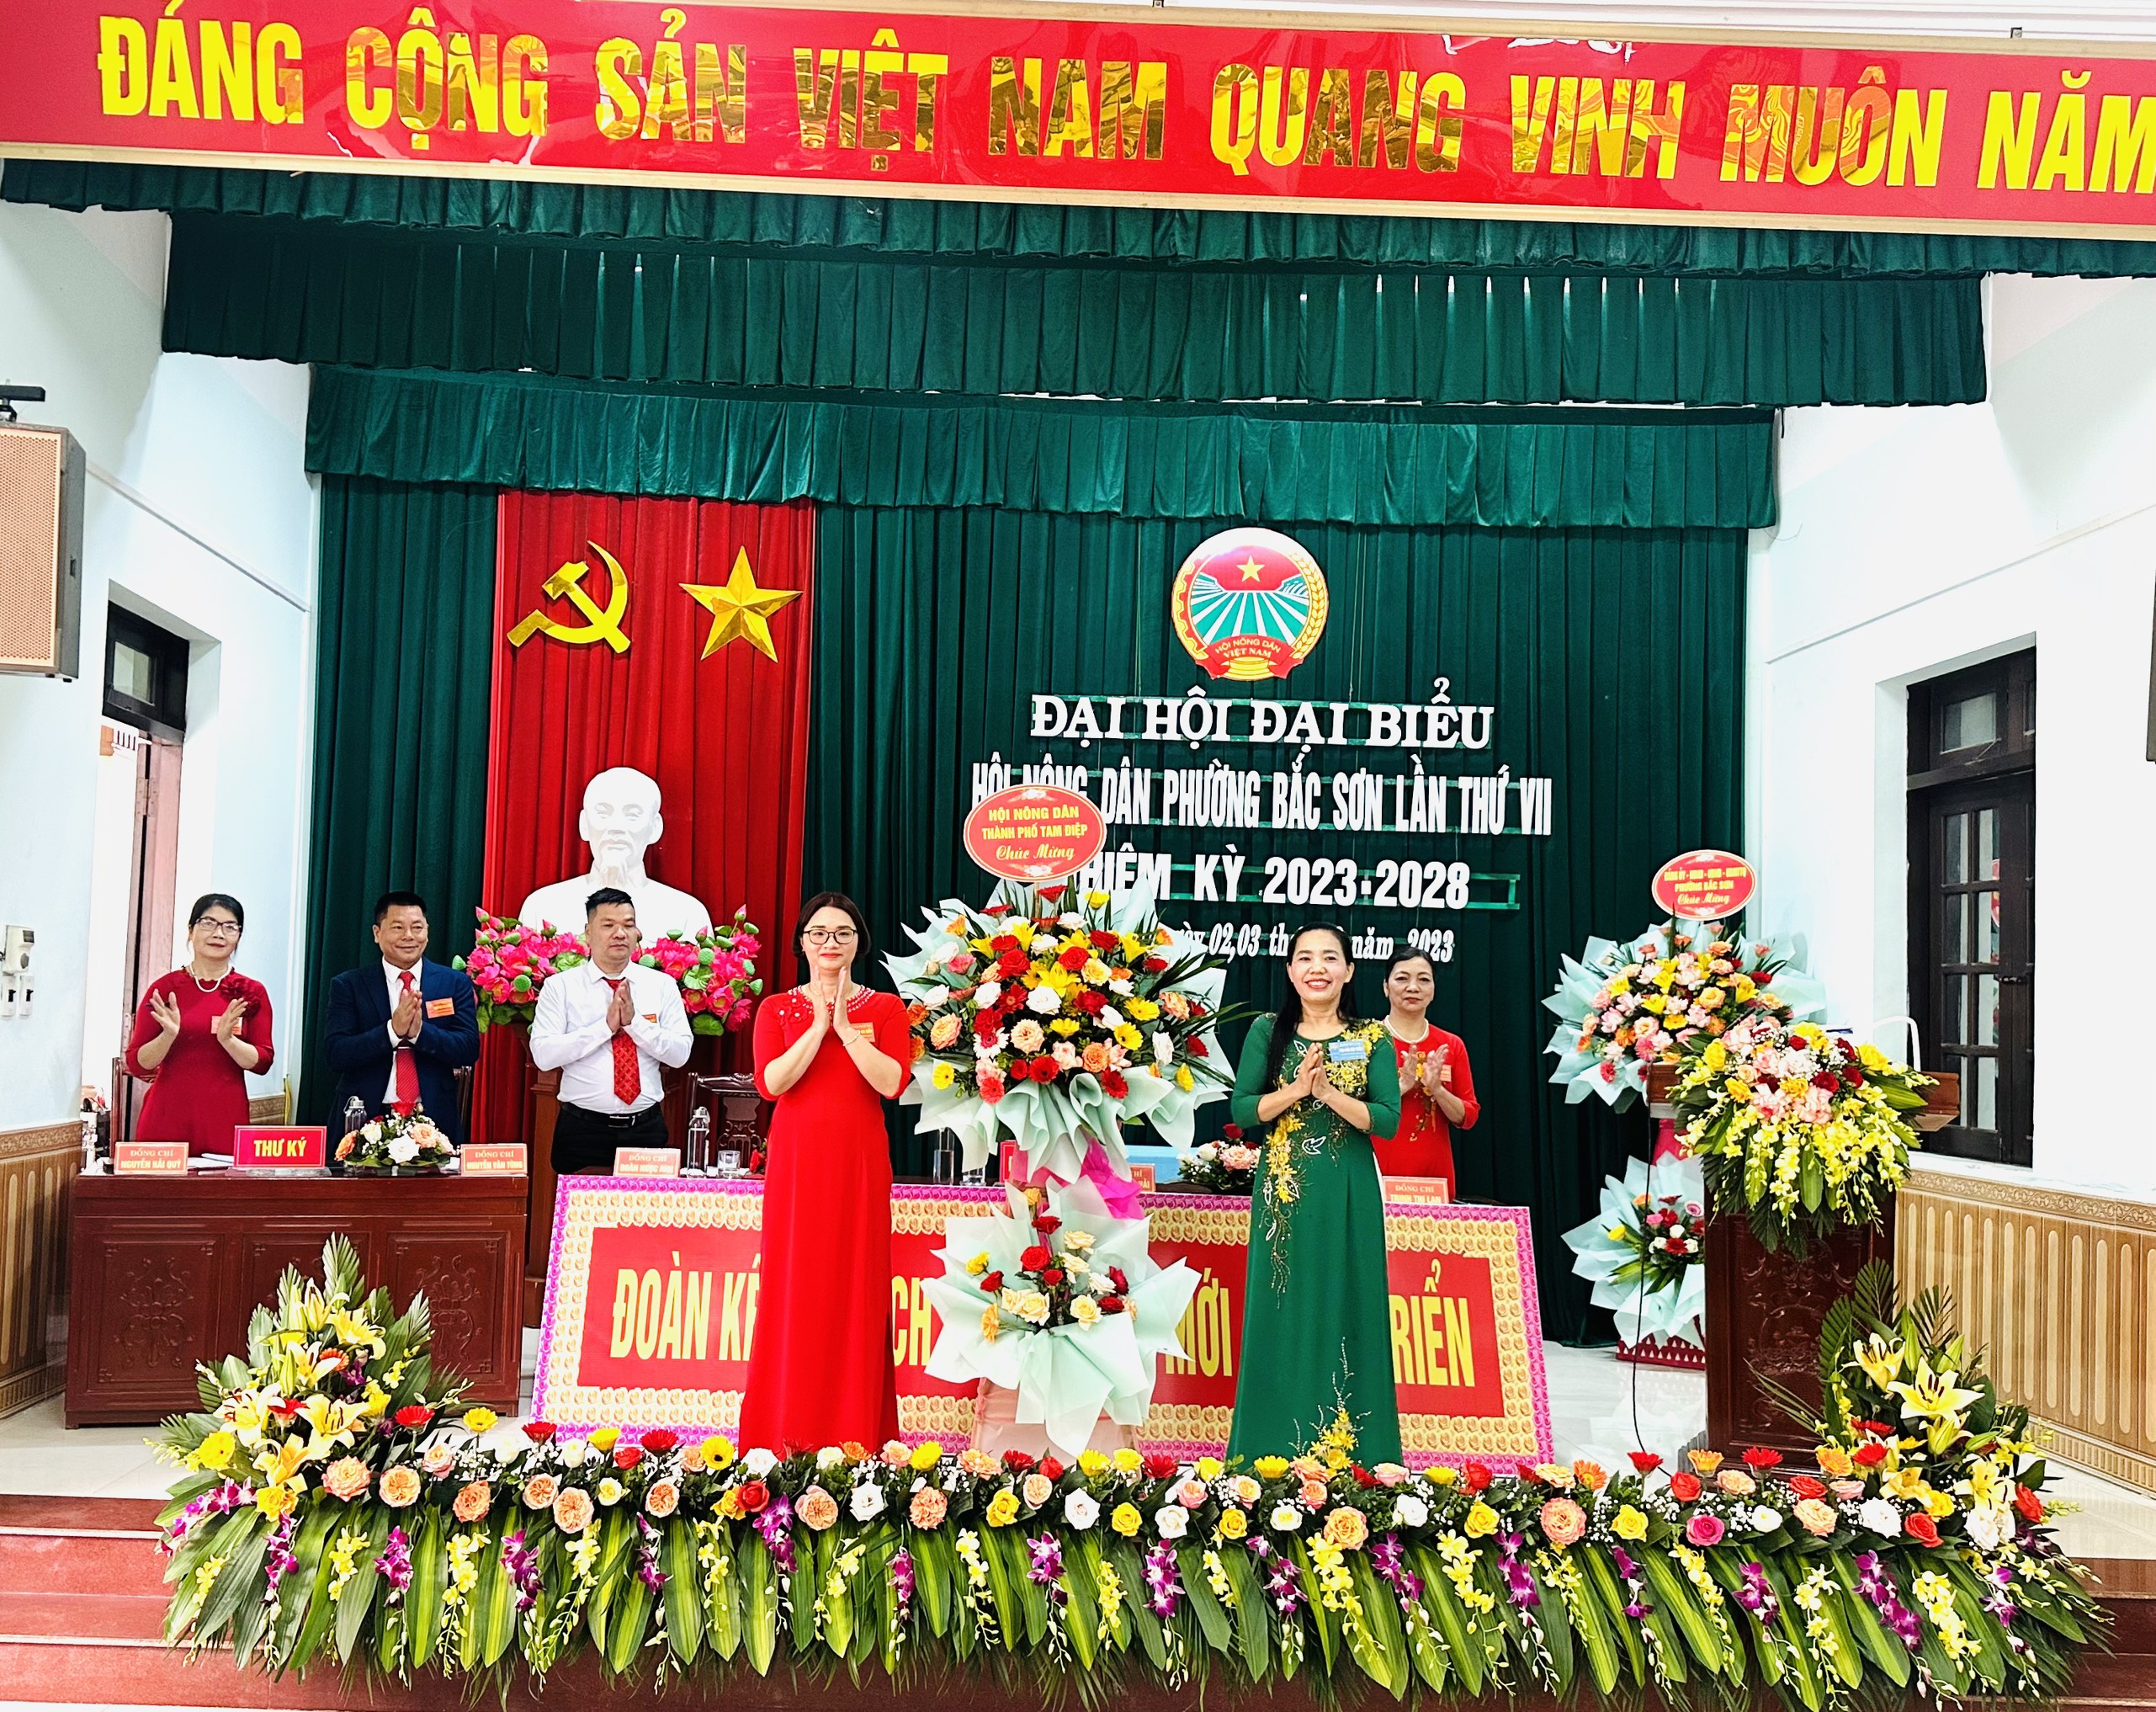 Hội Nông dân phường Bắc Sơn tổ chức Đại hội đại biểu lần VII, nhiệm kỳ 2023-2028